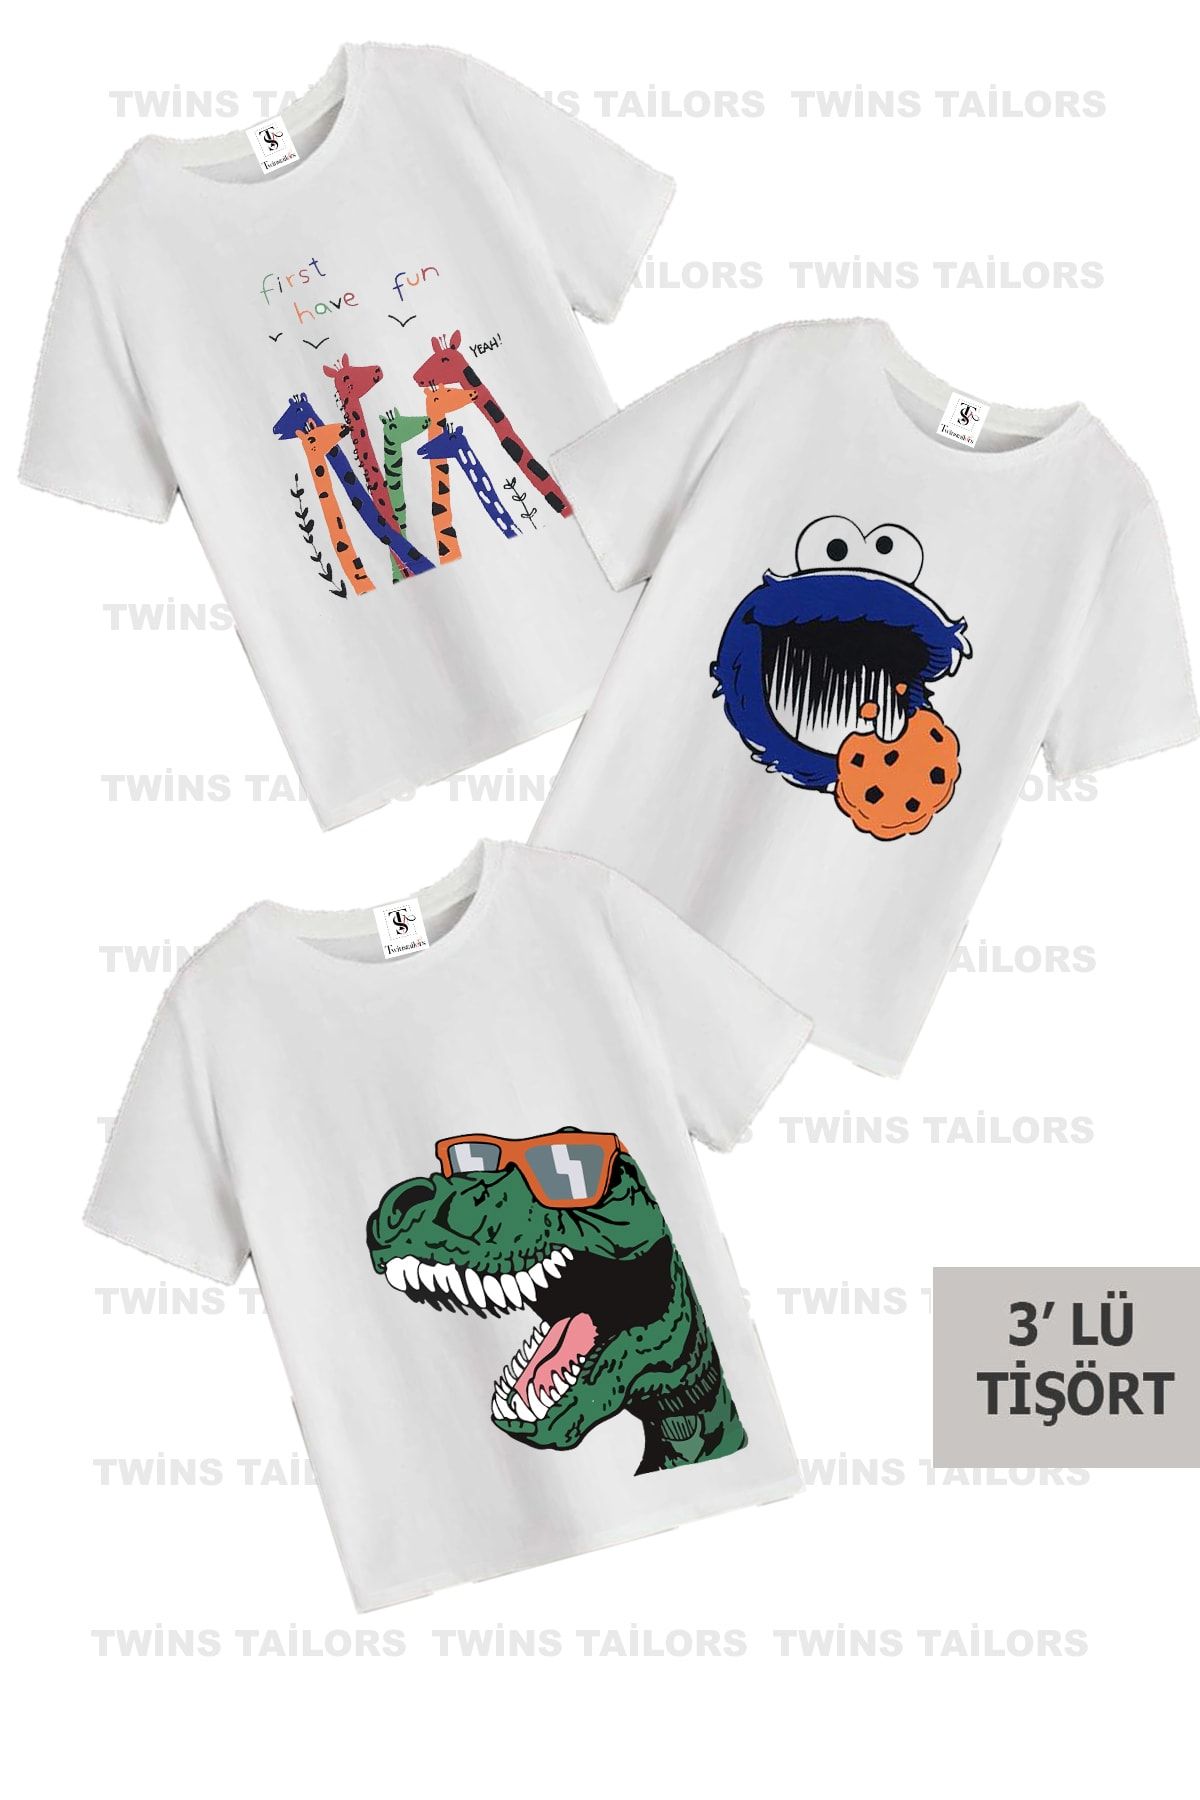 twins tailors Çocuk Dinazor Baskılı Beyaz Bisiklet Yaka 3'lü Çocuk T-shirt Paketi